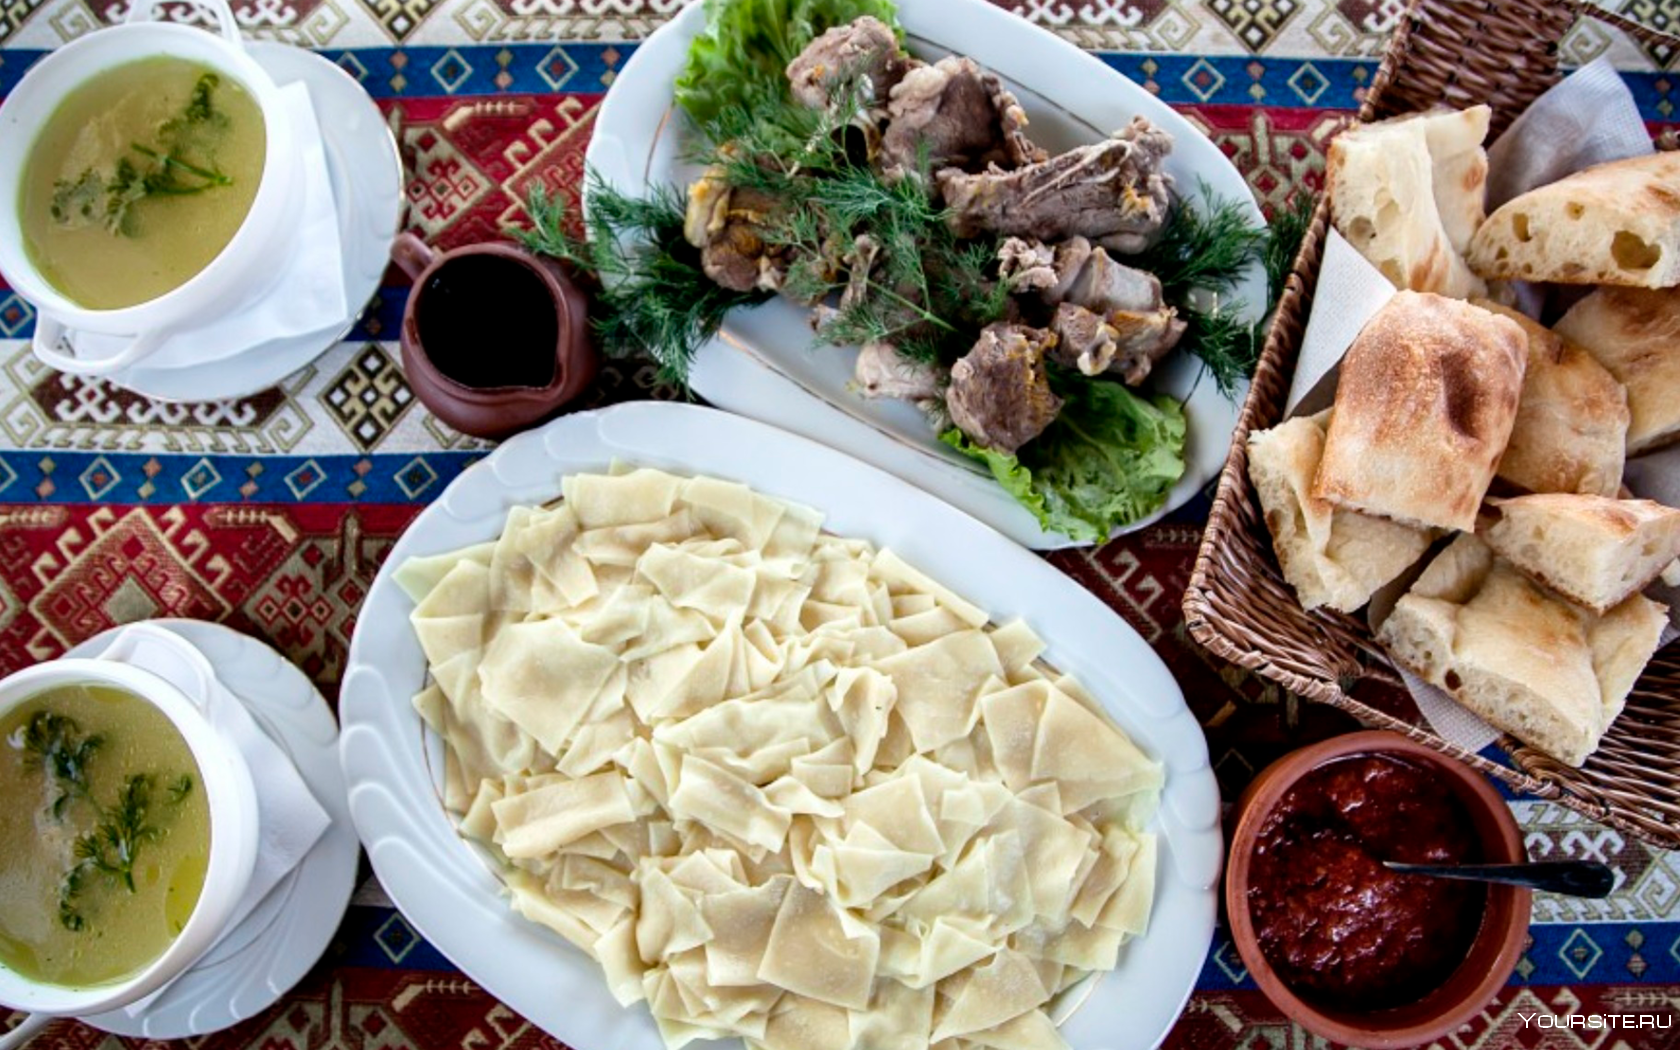 Хинкал Дагестанский Лакский. Национальная кухня Дагестана хинкал. Дагестанское блюдо хинкал. Национальная еда хинкал Дагестанская.